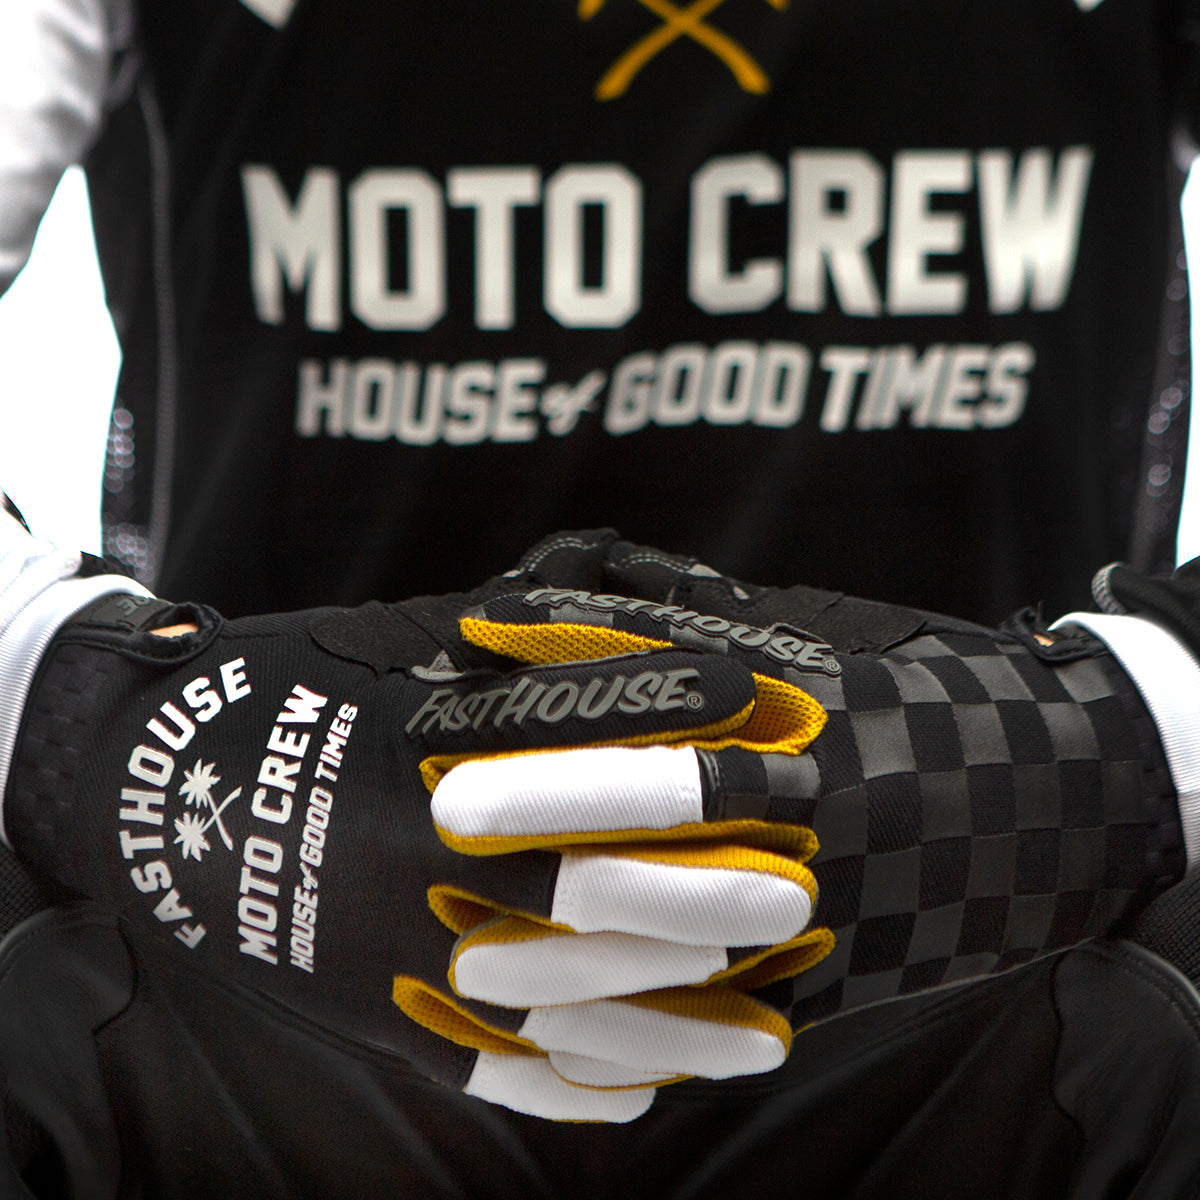 Speed Style Haven Glove - Black/White